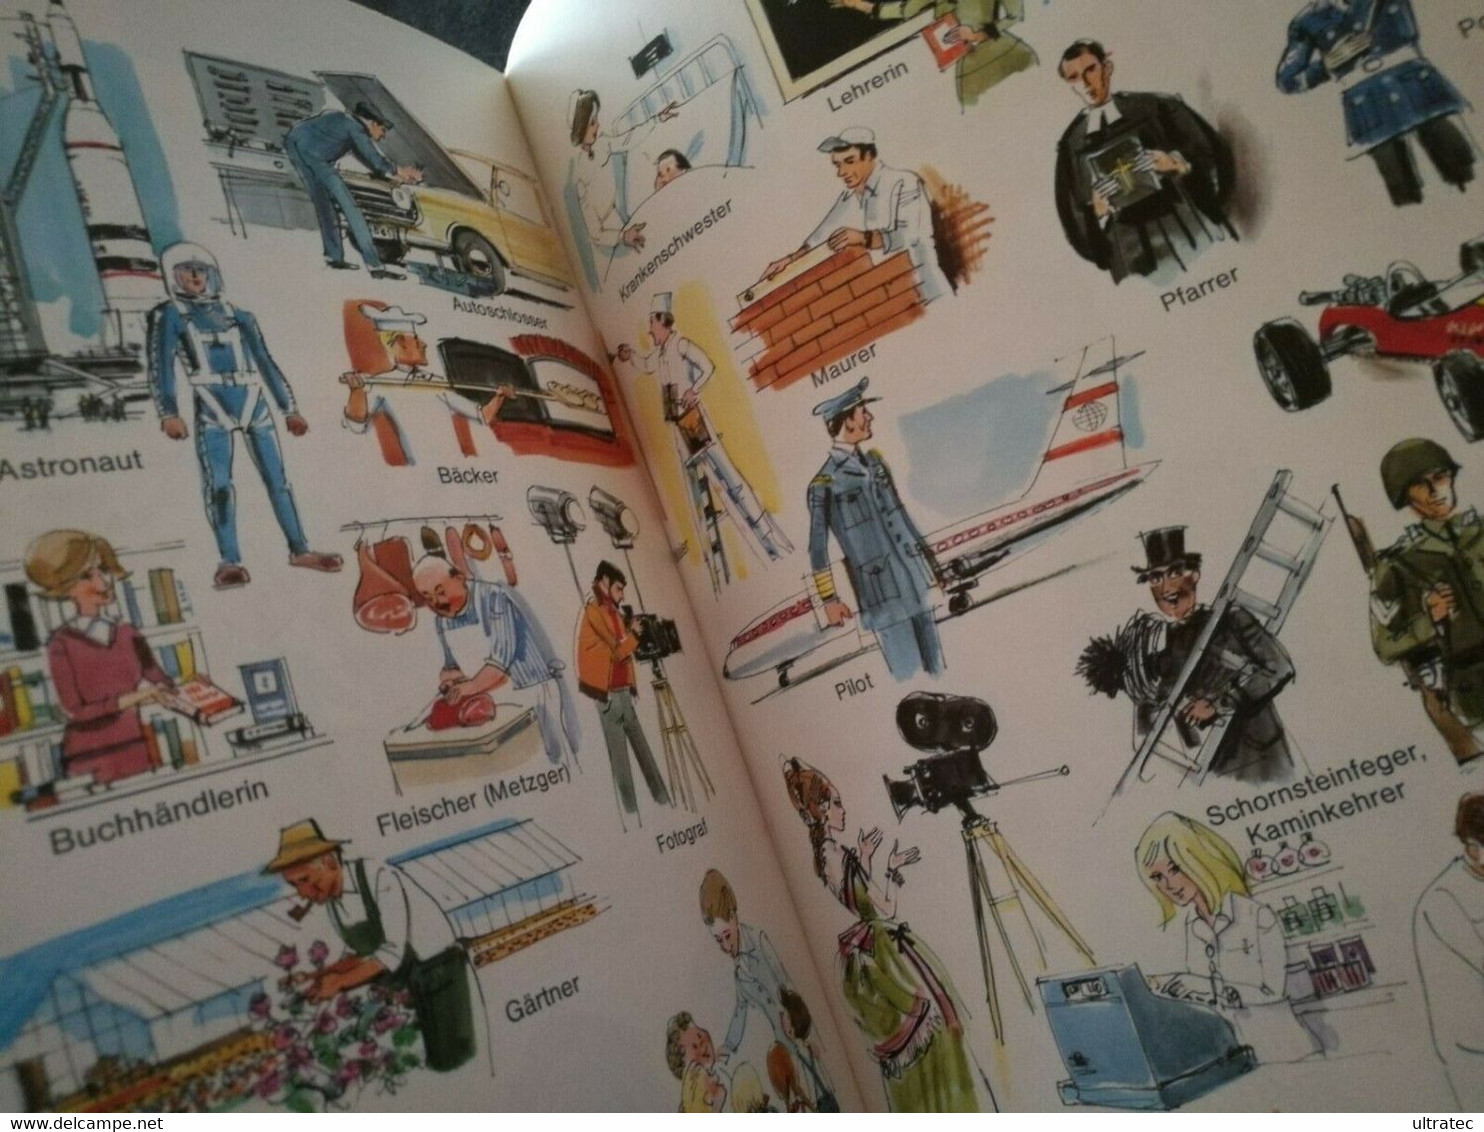 «Mein Buntes Bilderwörterbuch» Von Horst Lemke 70er Jahre Antikes Kinderbuch - Aventura